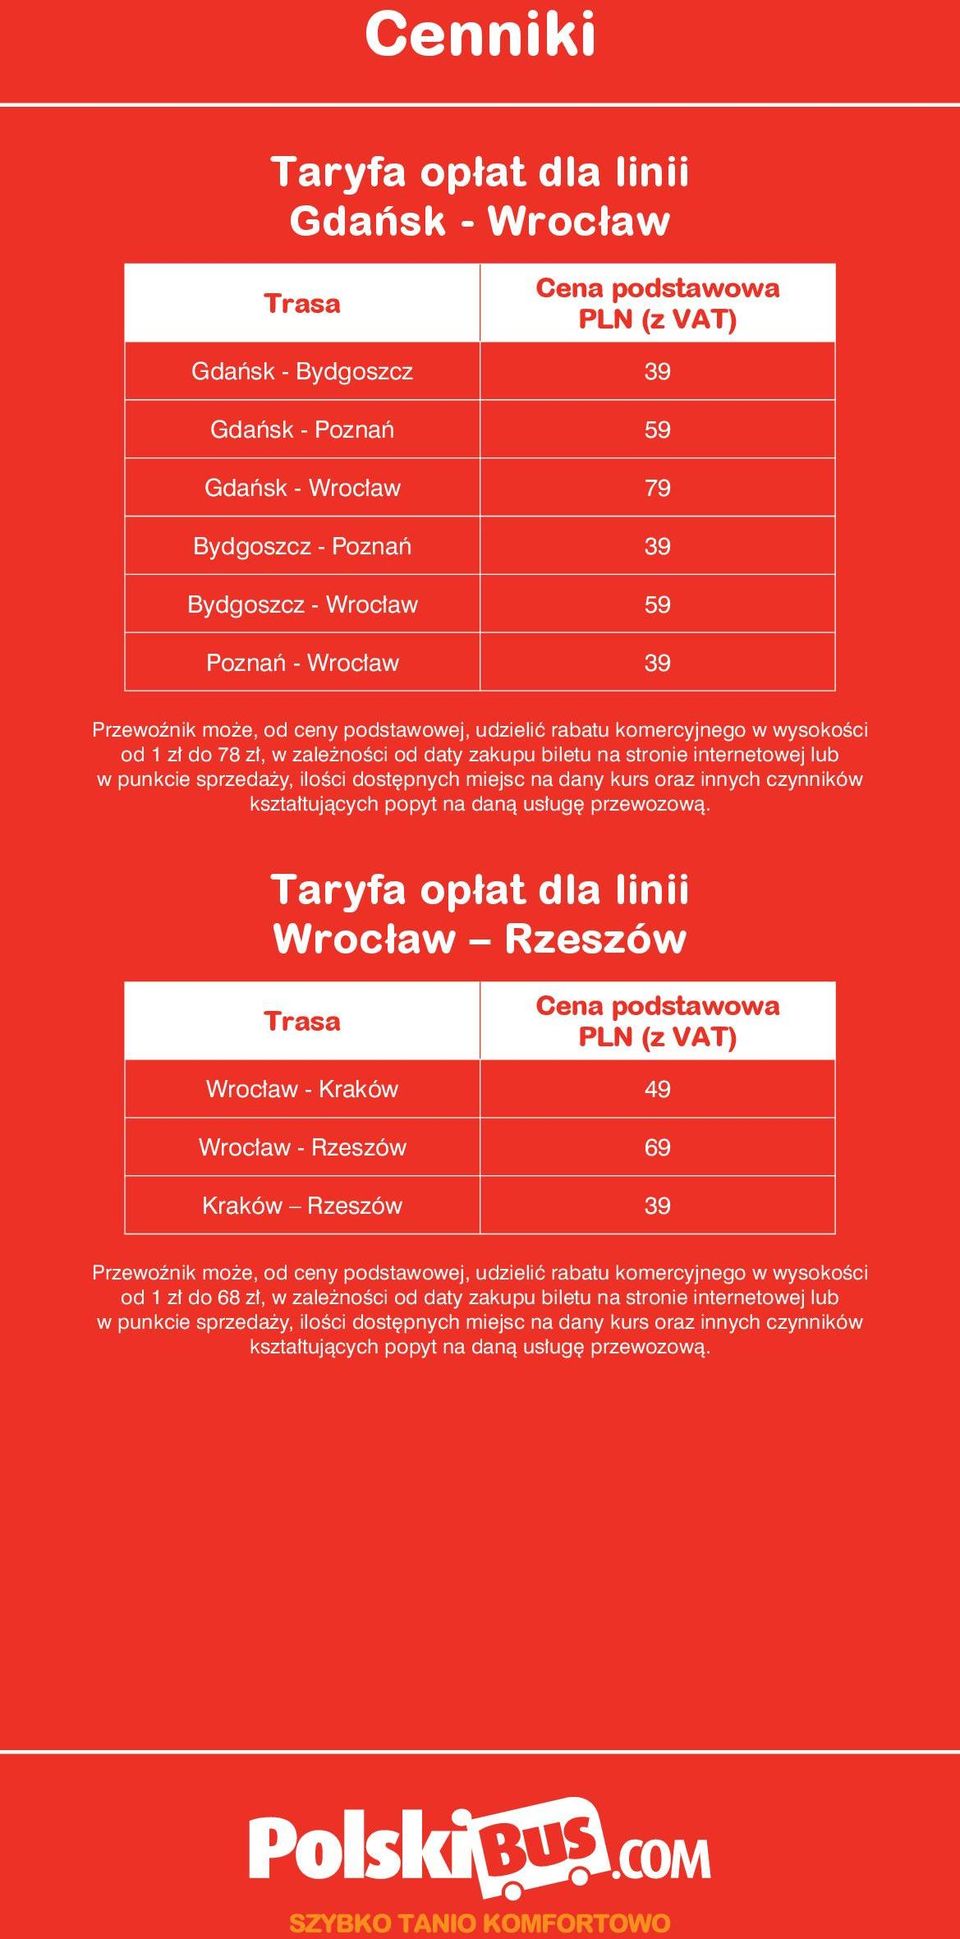 zakupu biletu na stronie internetowej lub Wrocław Rzeszów Wrocław - Kraków 49 Wrocław -